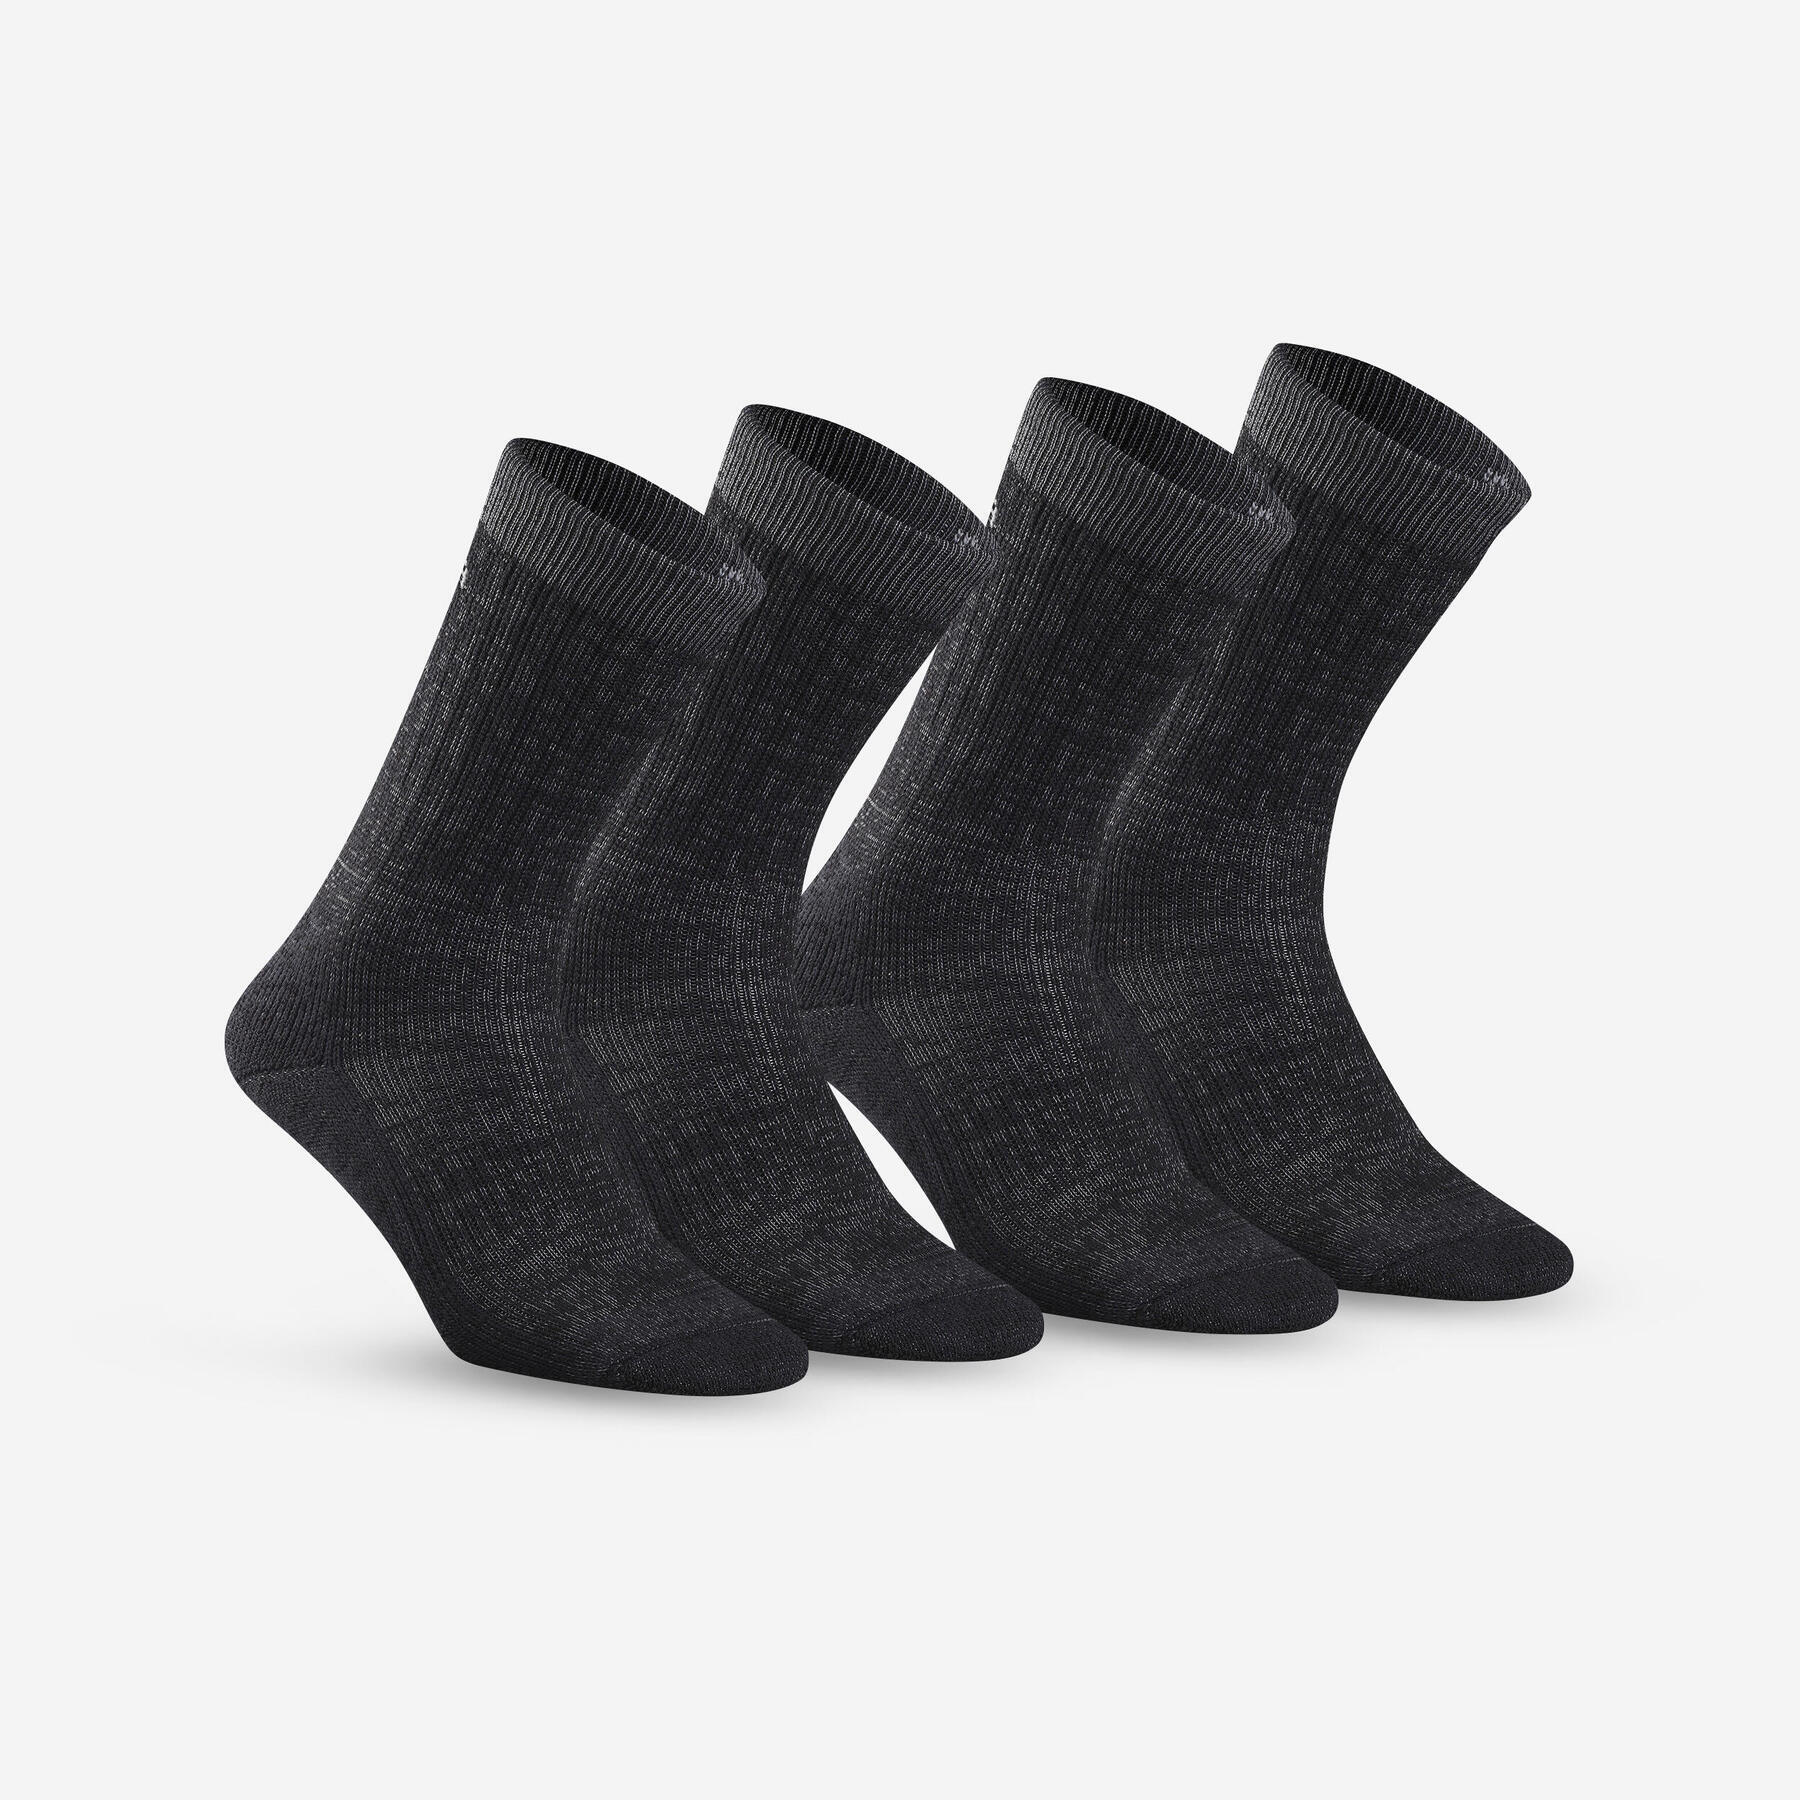 QUECHUA Refurbished Warm Hiking Socks - SH100 U-Warm Mid - 2 Pairs - B Grade